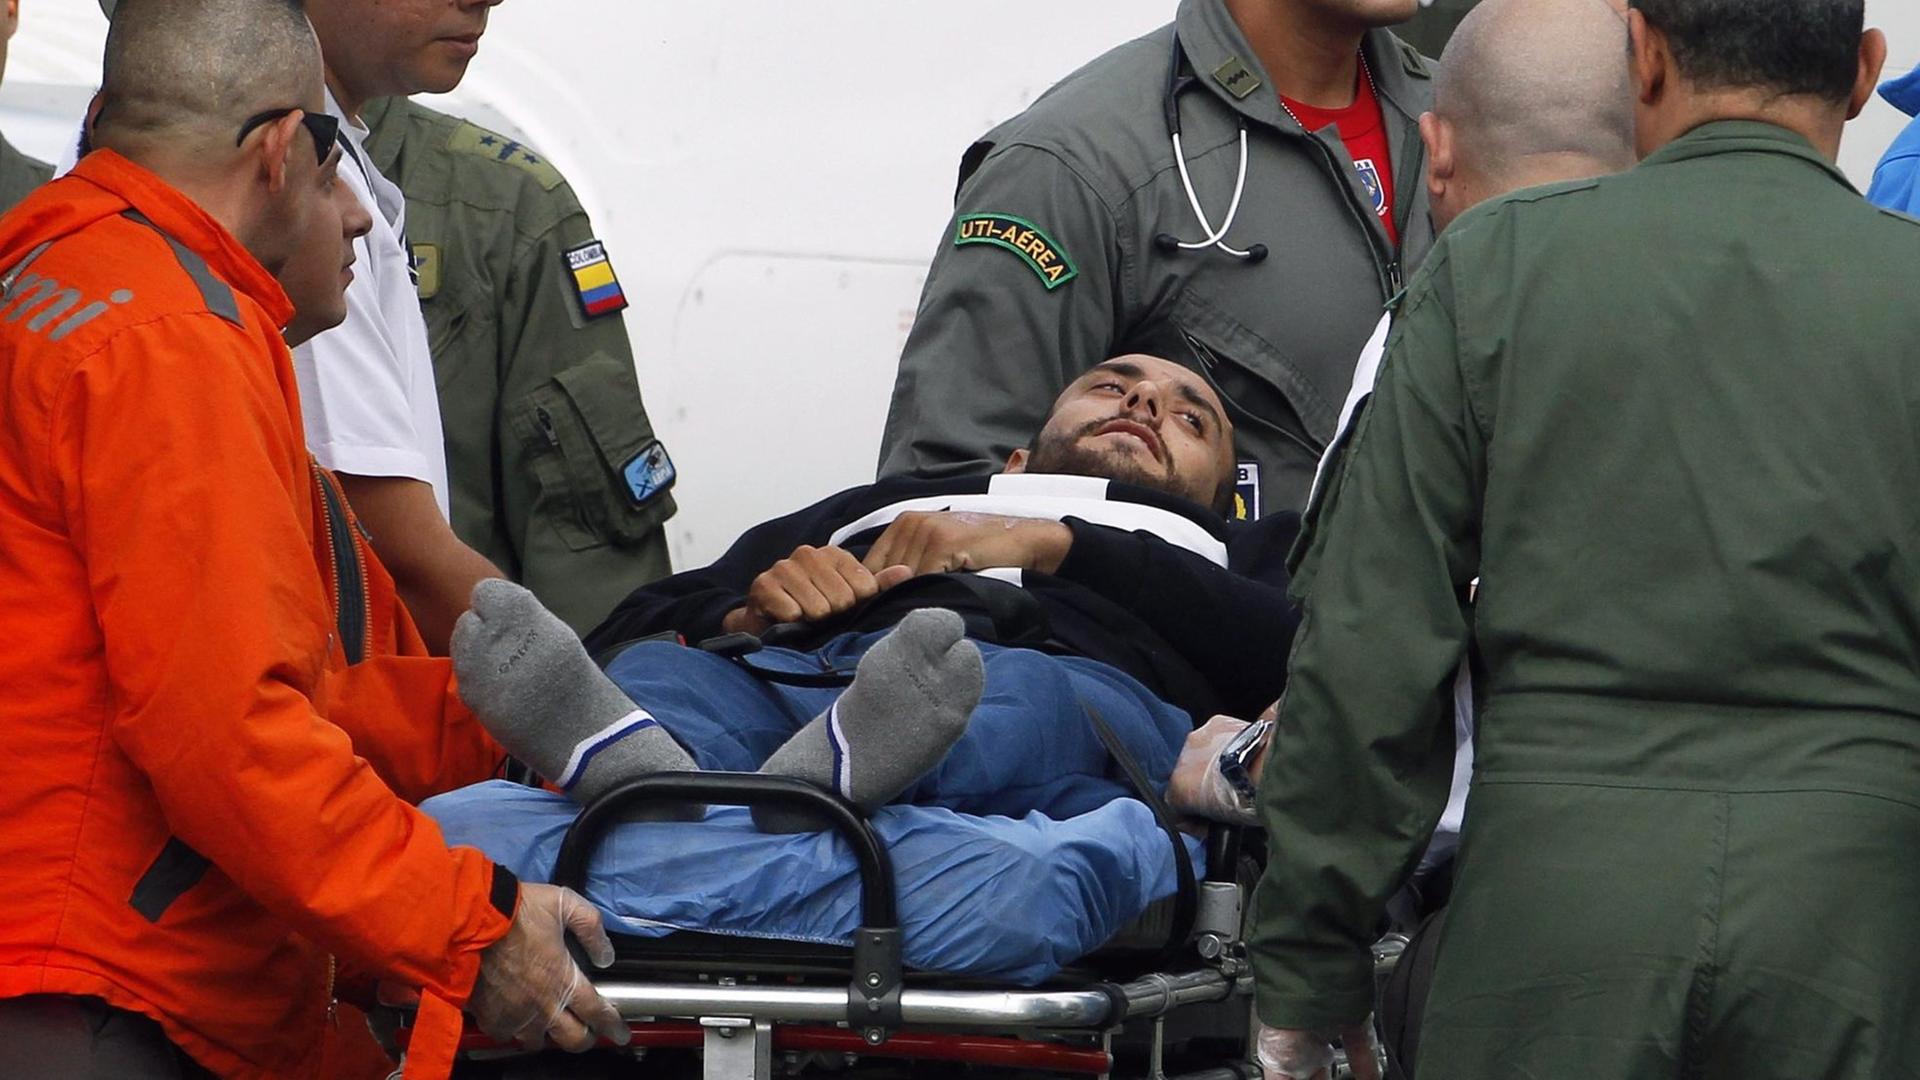 Der Spieler Alan Ruschel des Fußballvereins Chapecoense überlebte den Flugzeugabsturz in der Nähe des kolumbianischen Ortes Medellin. 71 Menschen starben beim Absturz am 28. November 2016.